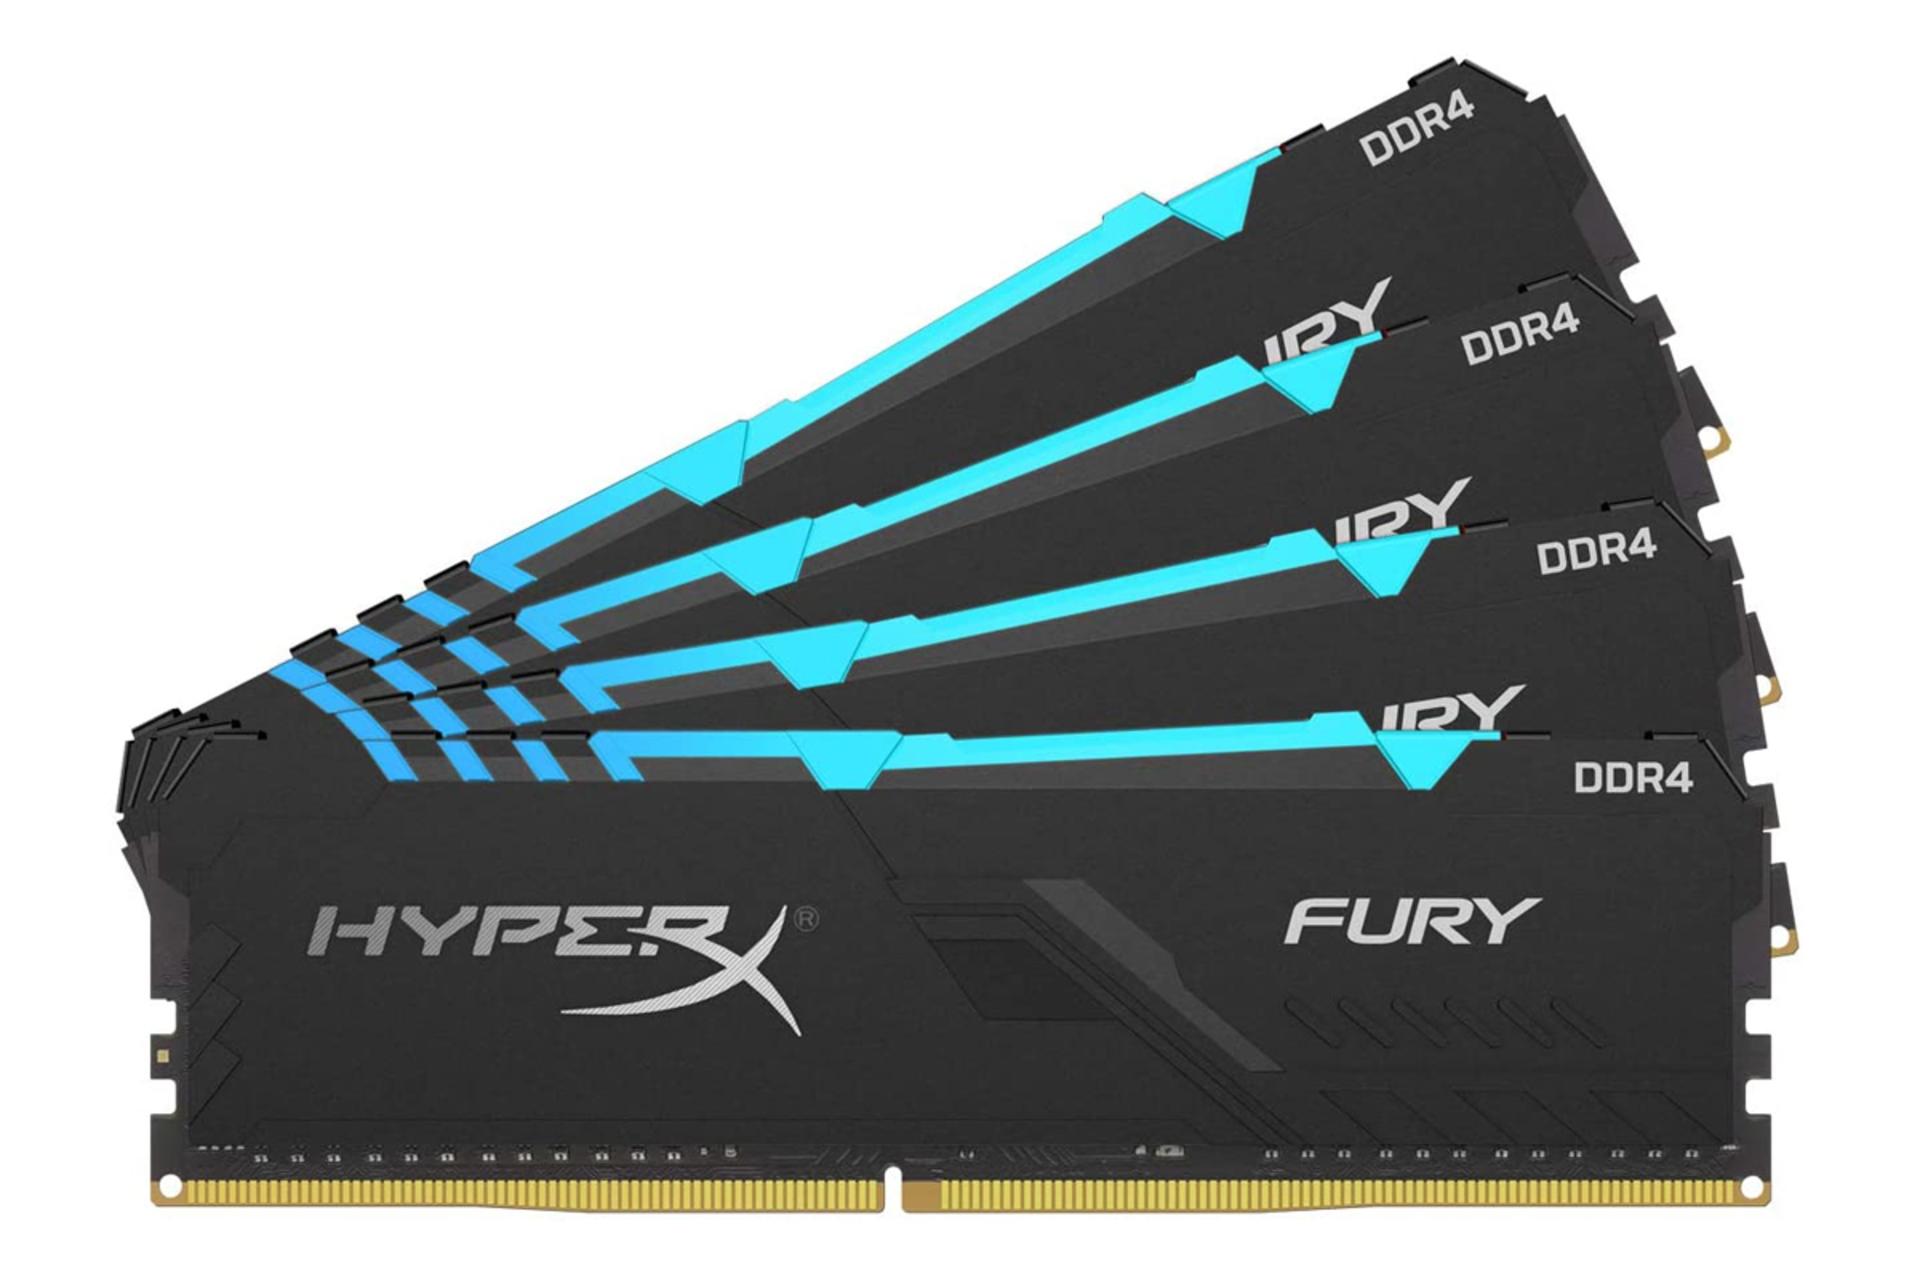 نمای جلو رم هایپر ایکس Fury ظرفیت 32 گیگابایت (4x8) از نوع DDR4-3466